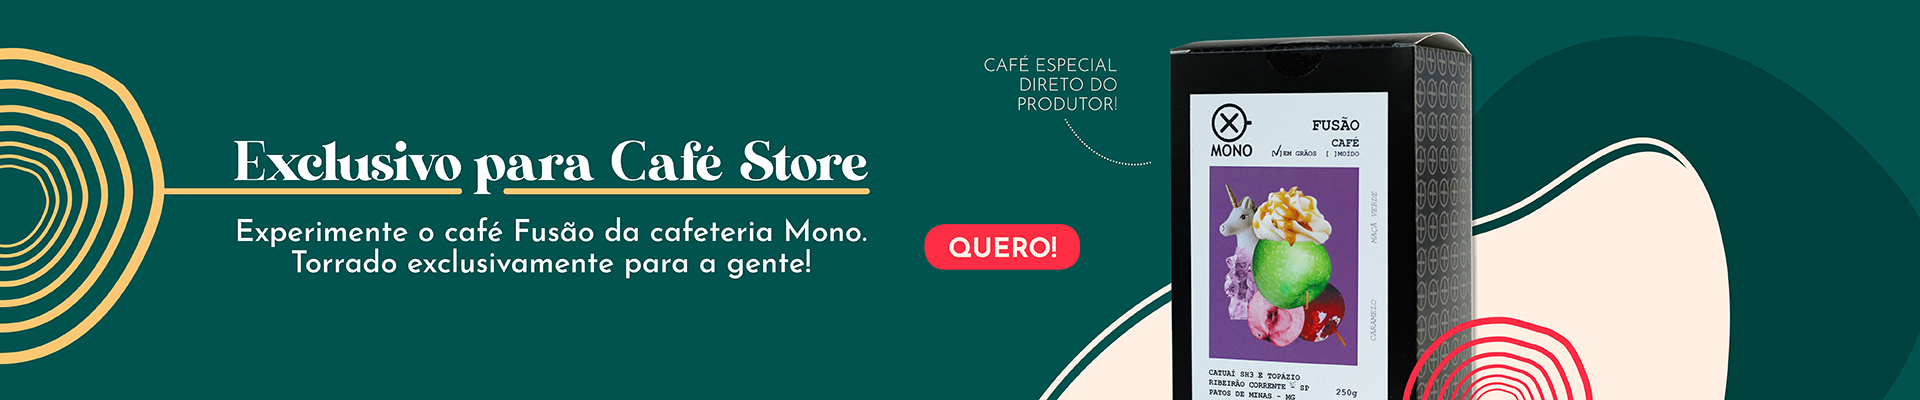 Mono Cafe Exclusivo